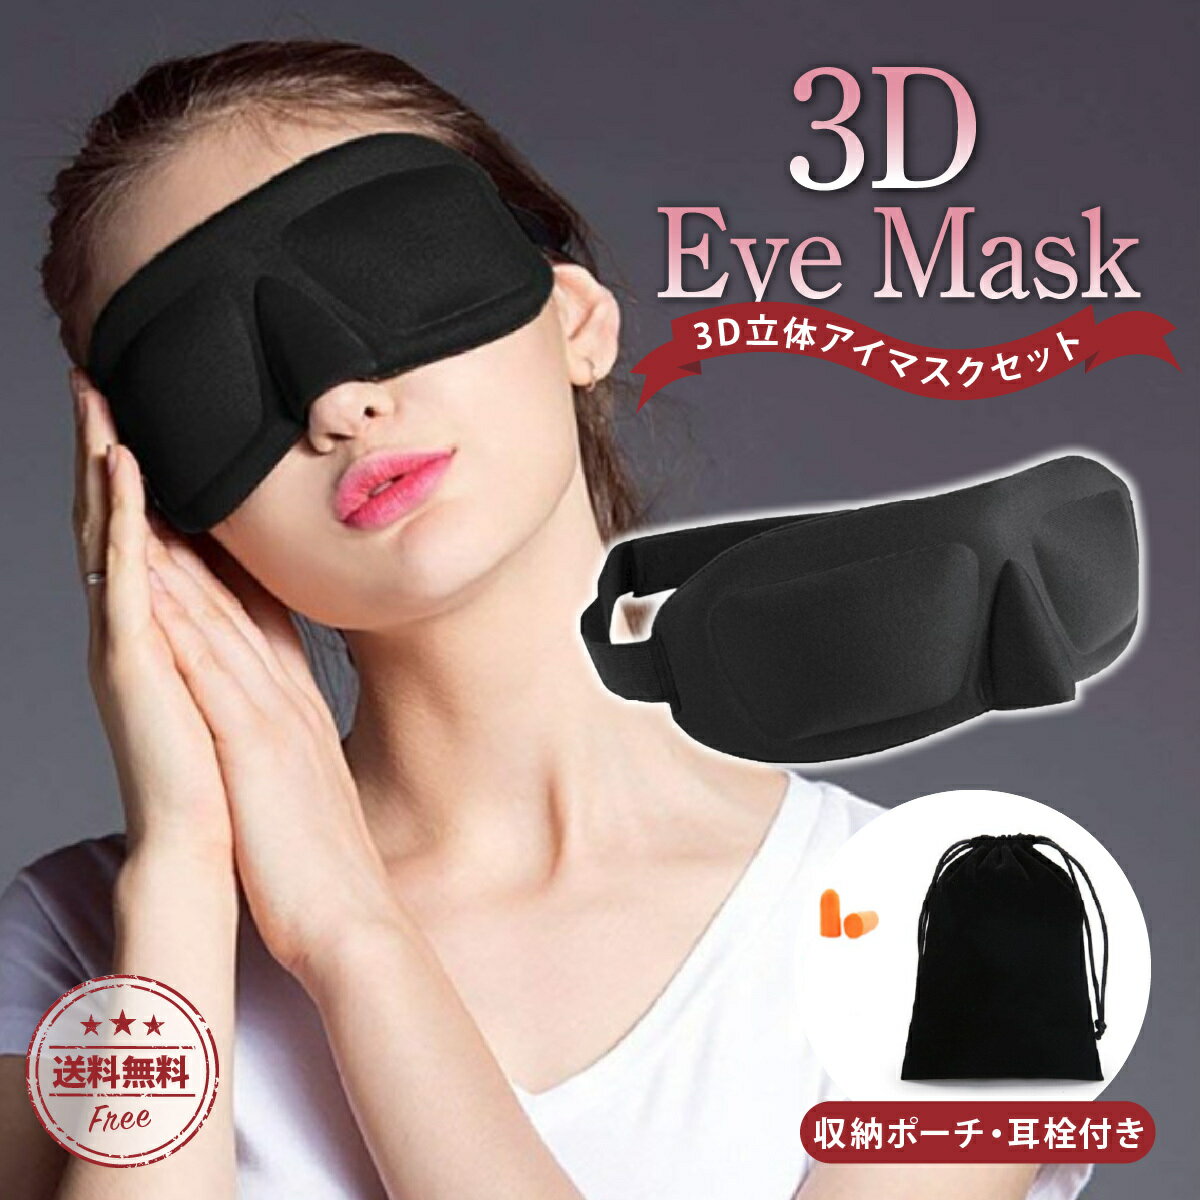 【送料無料】アイマスク 安眠 3D 立体 マツエク 睡眠 眼精疲労 立体構造 耳栓 収納ポーチ付き 遮光性抜群 伸縮 マジックテープ 旅行 移動 飛行機 仮眠 携帯 持ち運び 夏 涼しい